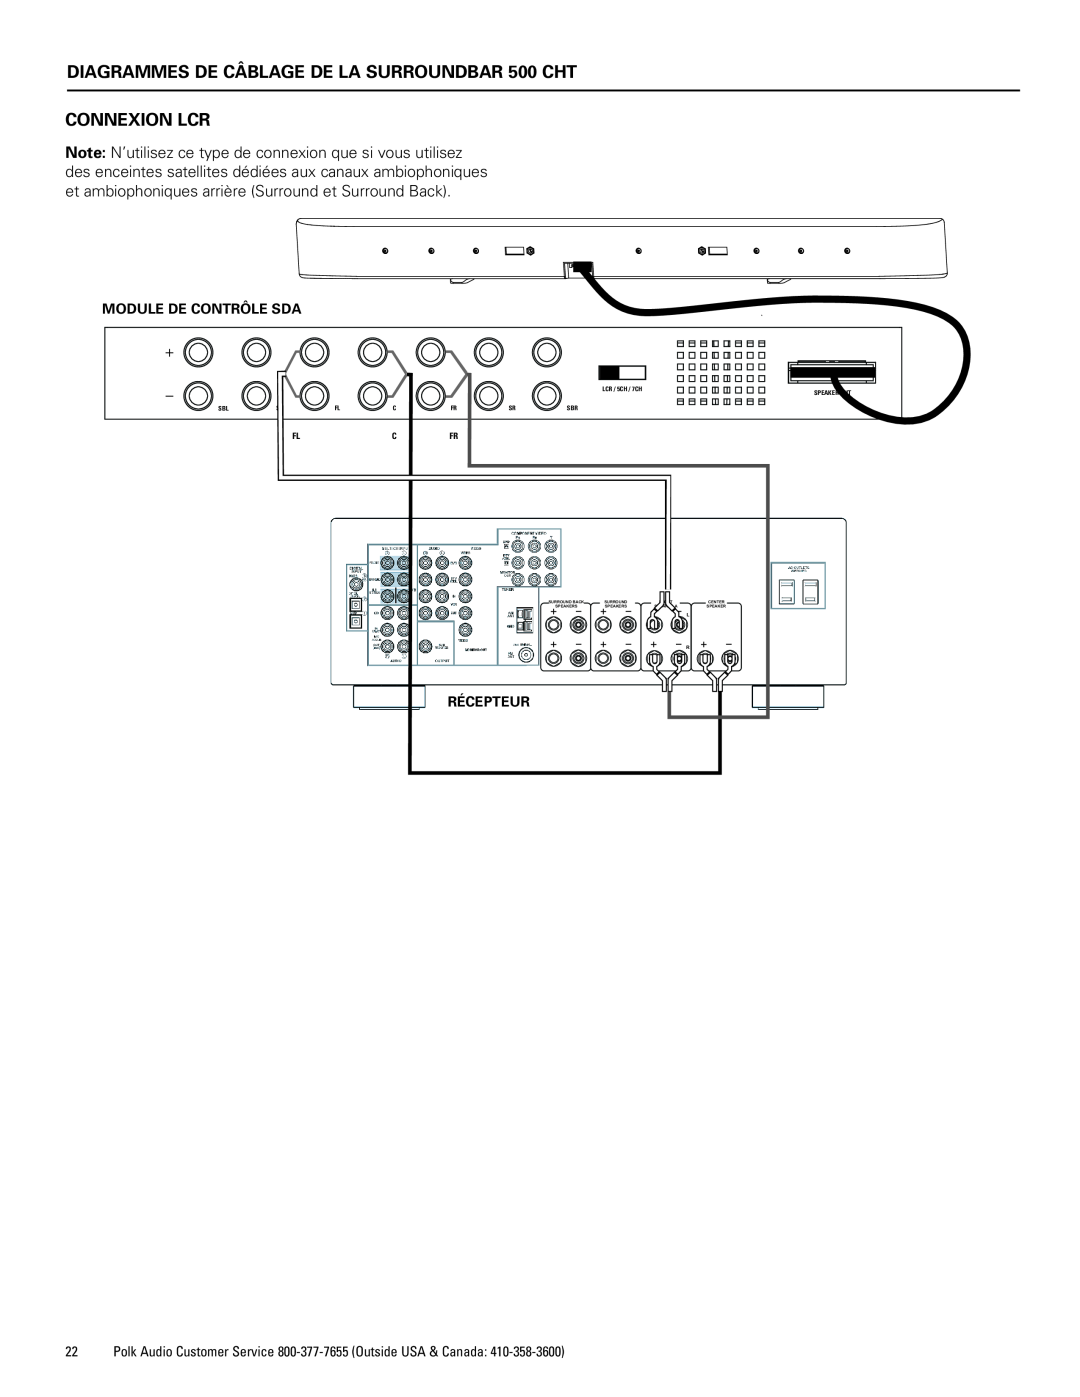 Polk Audio CHT400 manual DIAGRAMMES DE CÂBLAGE DE LA SURROUNDBAR 500 CHT CONNEXION LCR, Module De Contrôle Sda, Récepteur 